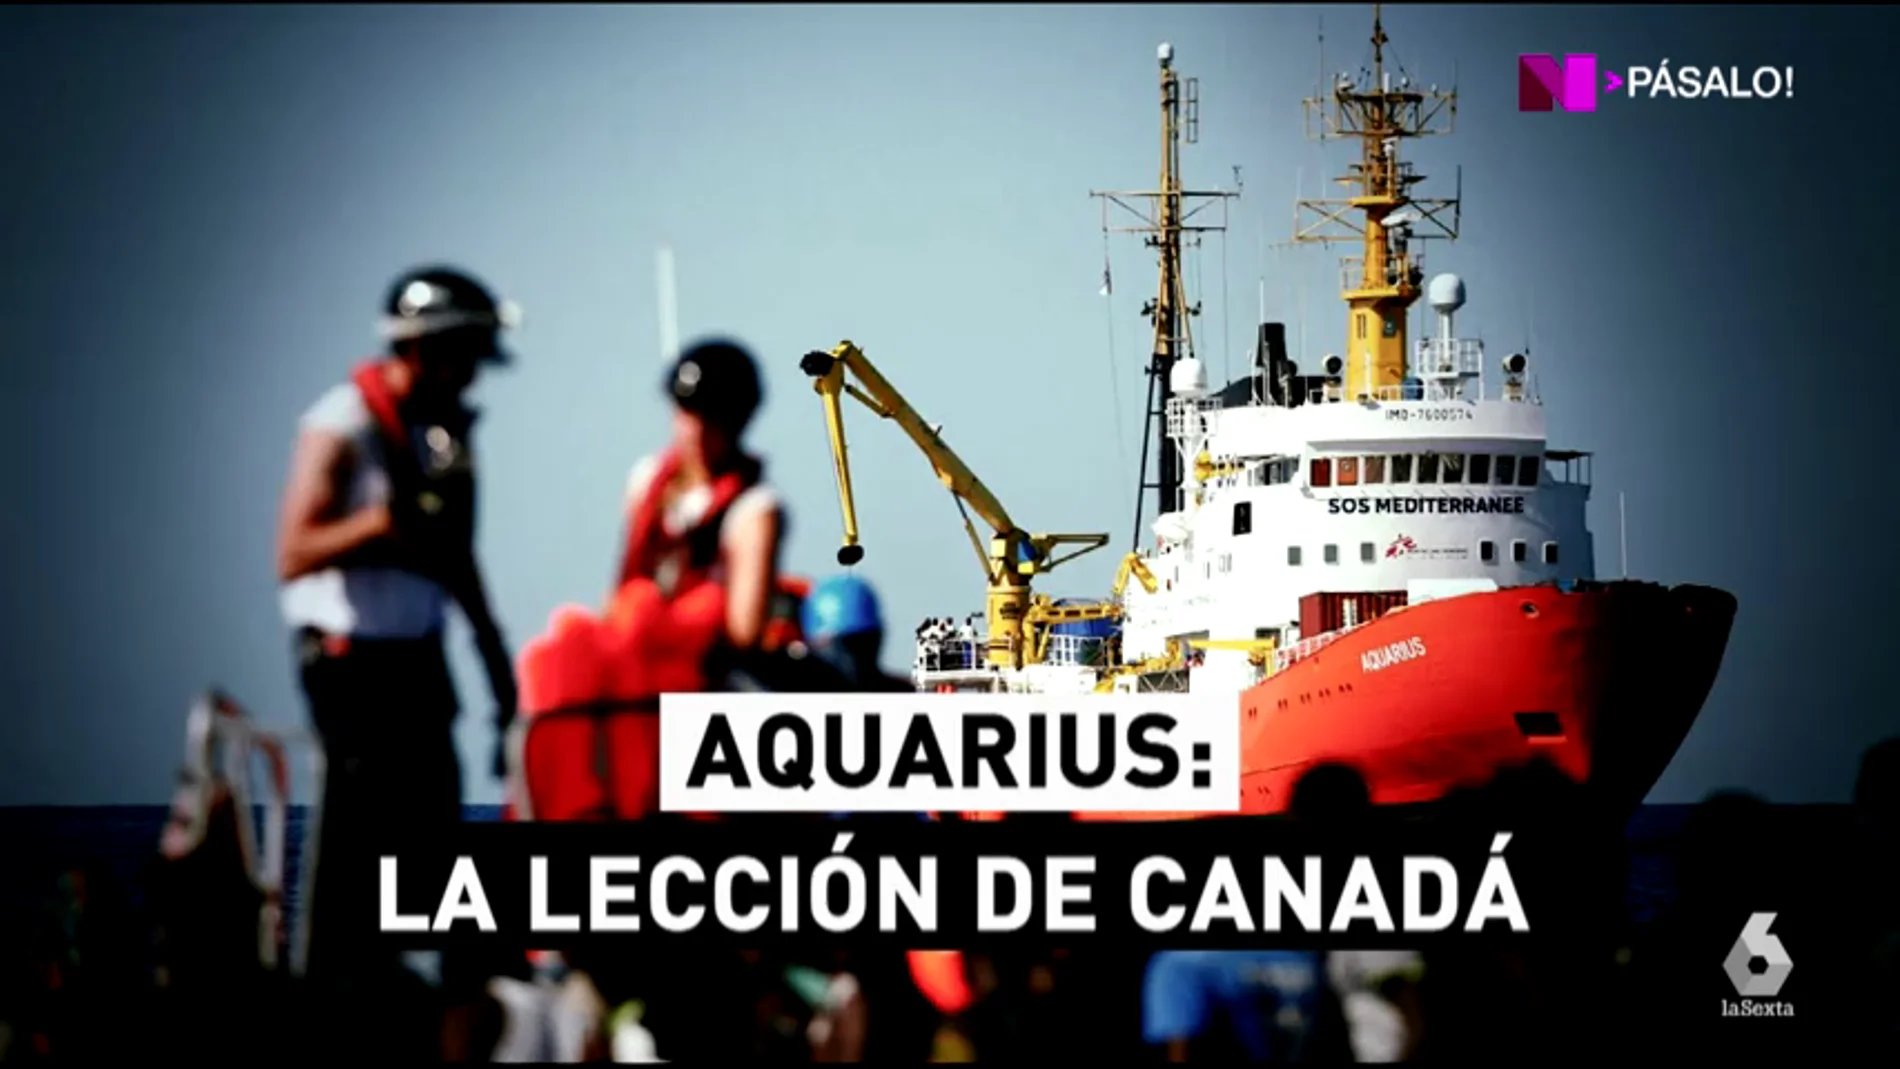 ¿Qué hacemos con los 629 migrantes del Aquarius?: Canadá tiene la solución